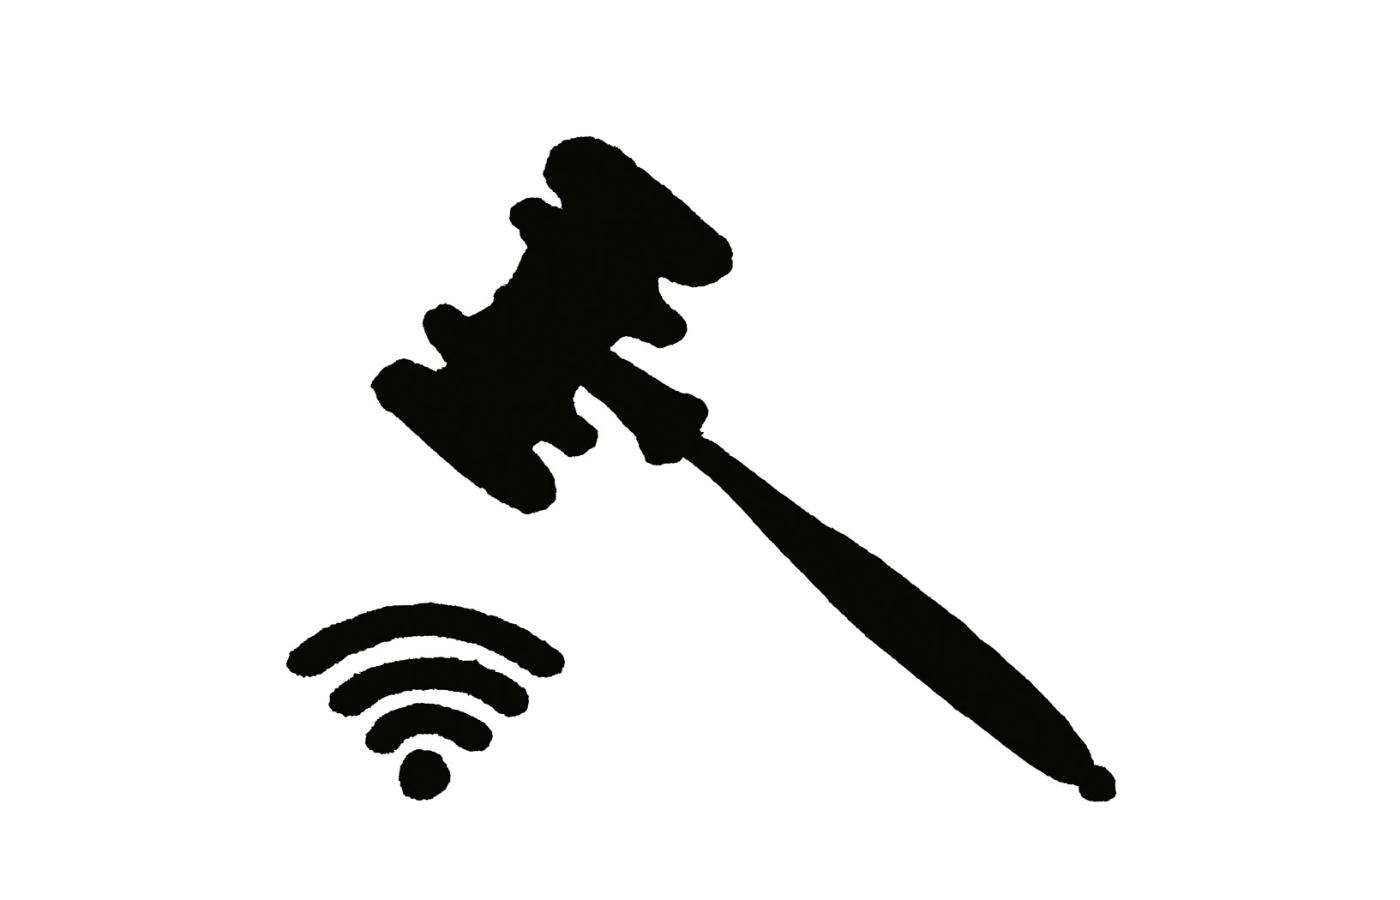 Brytyjski pisarz Richard Susskind uważa, że na świecie dostęp do internetu jest powszechniejszy niż dostęp do wymiaru sprawiedliwości.